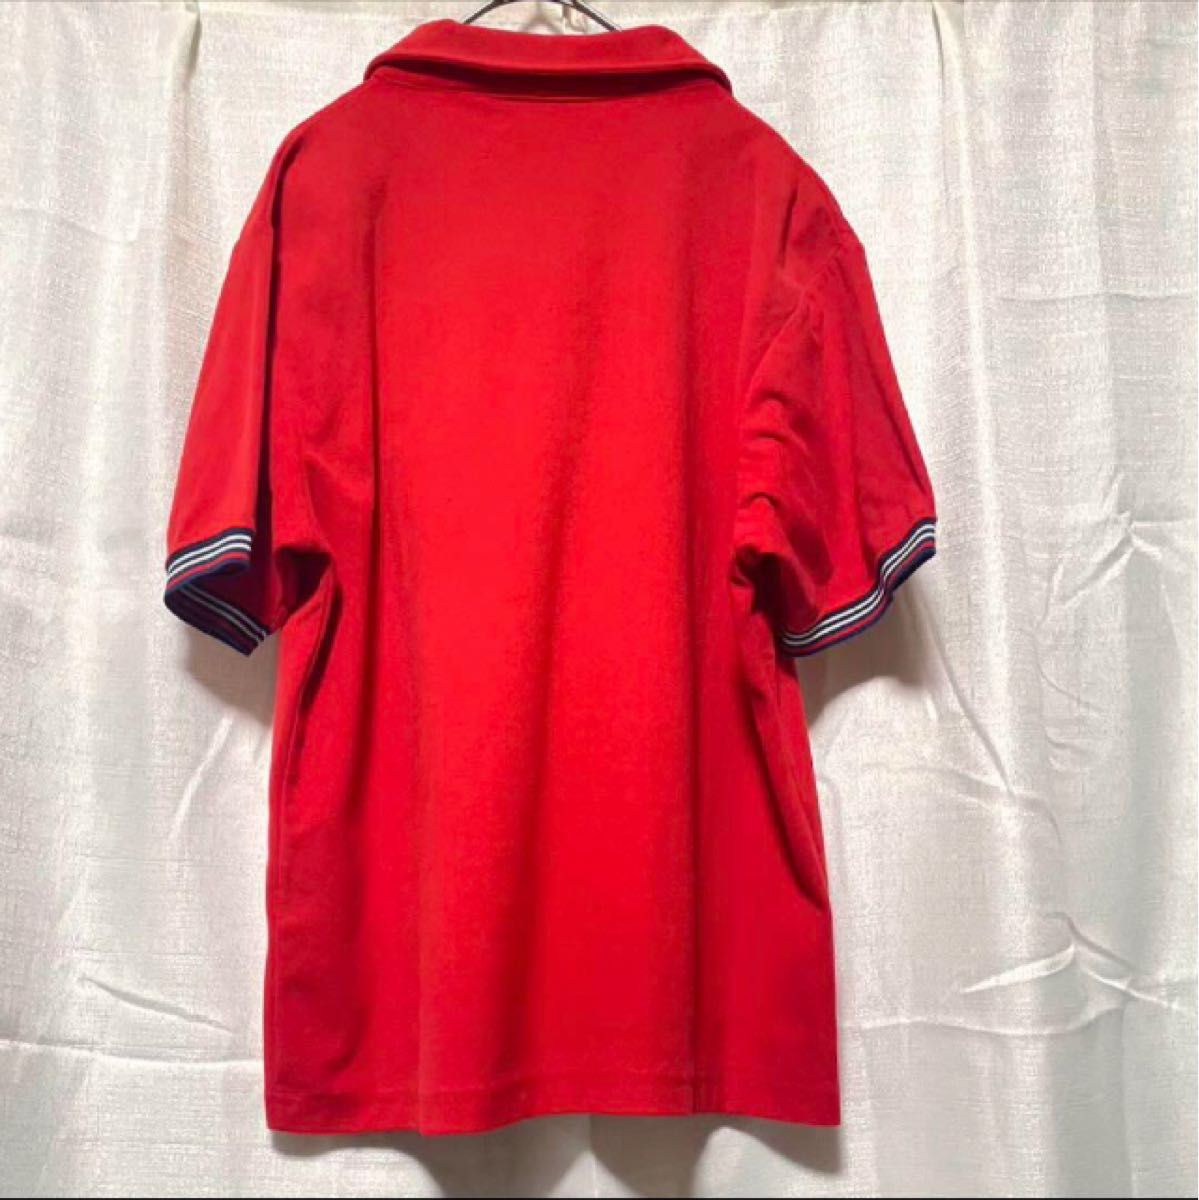 FILA フィラ メンズ 半袖 ポロシャツ 襟付き Tシャツ スポーツ テニス ゴルフ ウェア 刺繍 ワンポイント レッド 赤 M